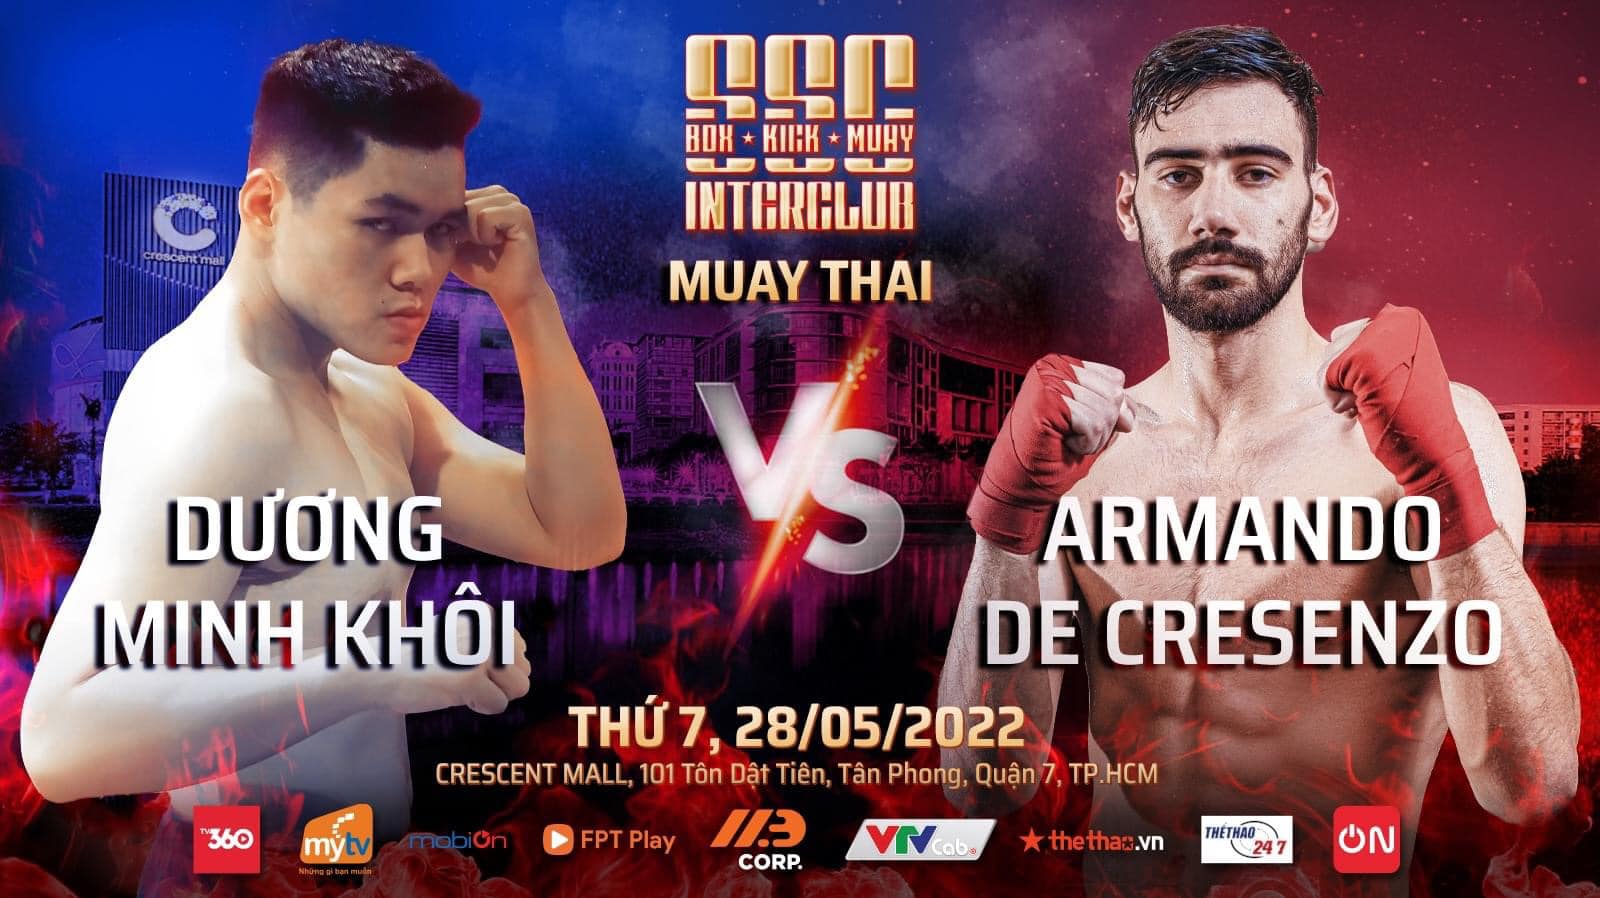 Sự kiện 3 môn võ Boxing, Kickboxing, Muay Thái tổ chức ở TPHCM ngày 28/5 - Ảnh 3